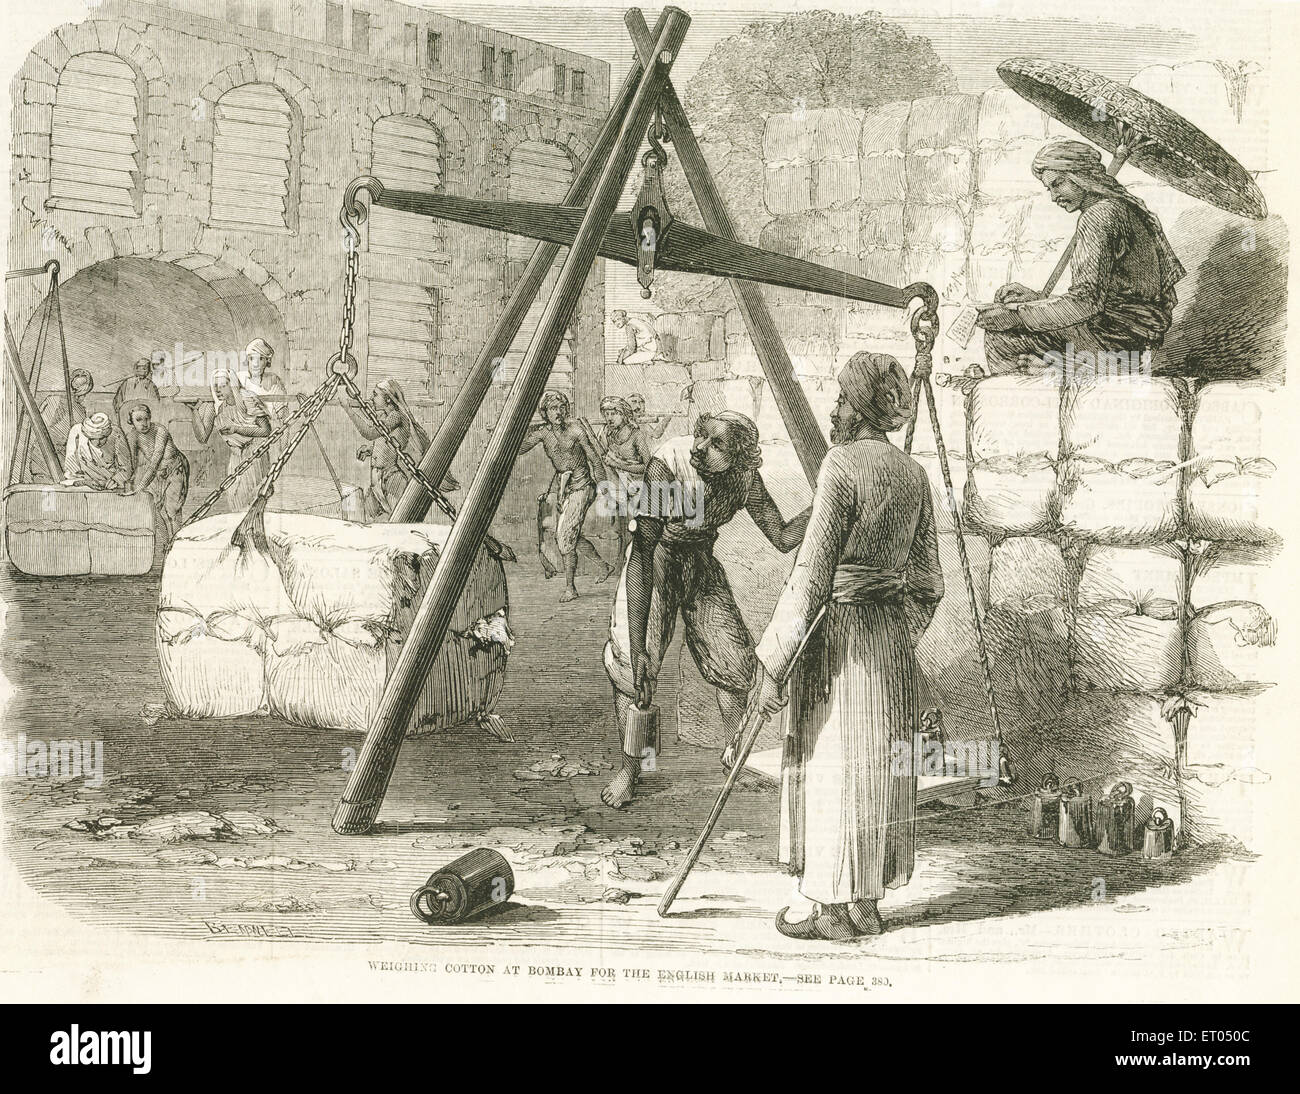 Pesage du coton à l'exportation pour le marché anglais ; Bombay ; Mumbai ; Maharashtra ; Inde ; Asie ; gravure ancienne de 1800s Banque D'Images